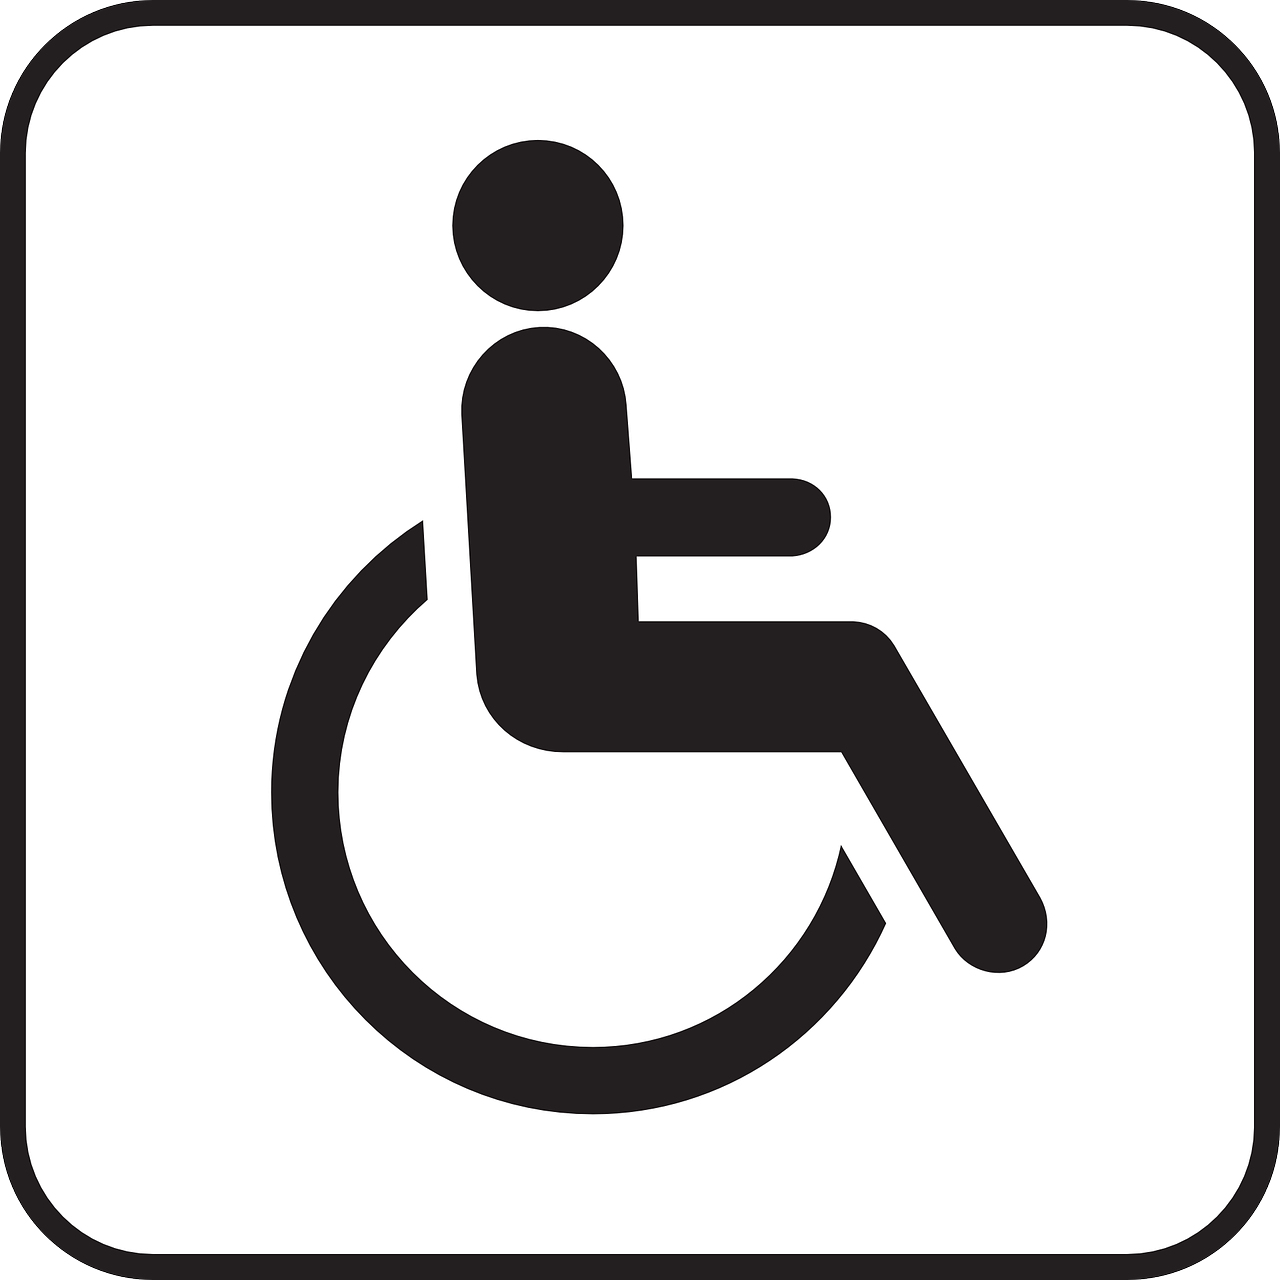 Zozijn Dagcentrum de Helmhorst instelling gehandicaptenzorg verstandelijk gehandicapten beoordeling